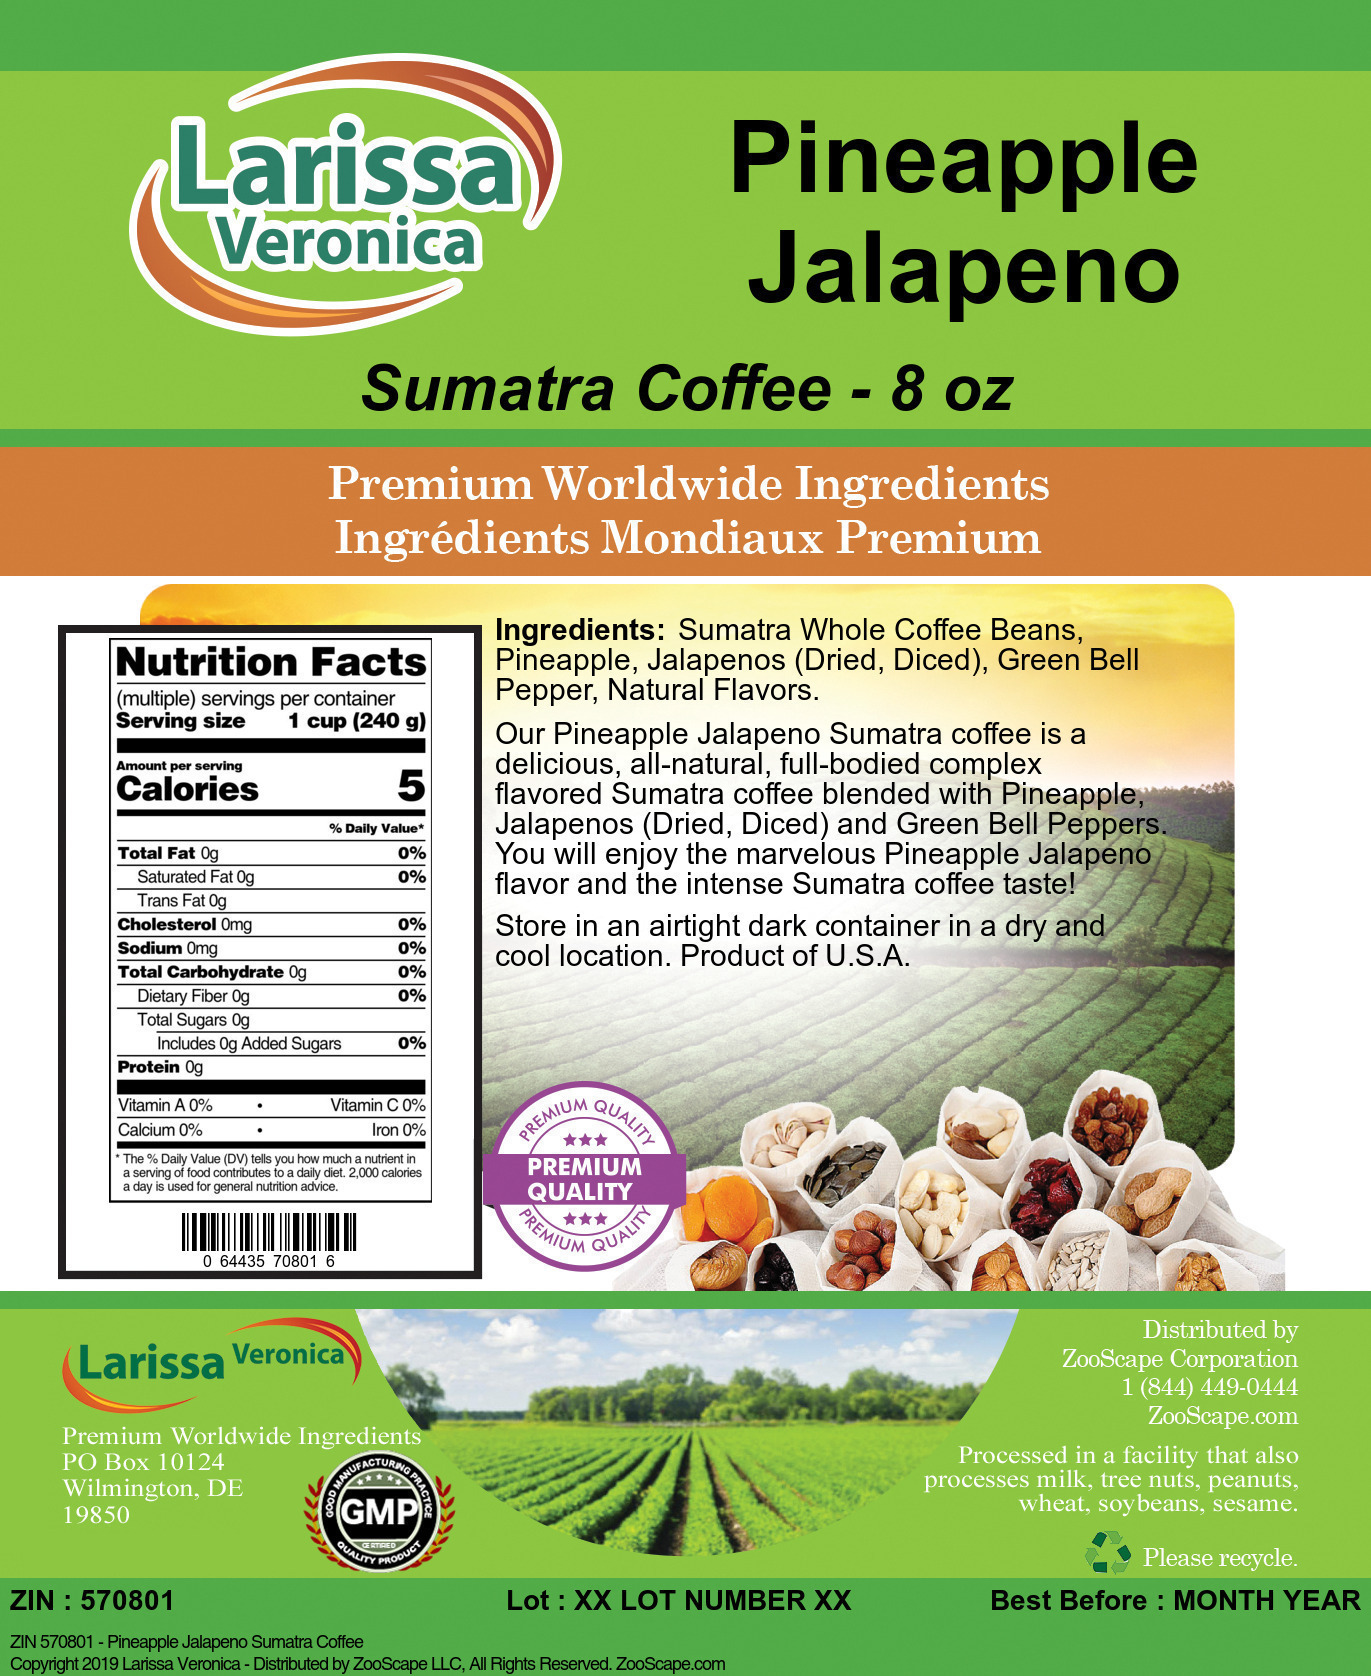 Pineapple Jalapeno Sumatra Coffee - Label